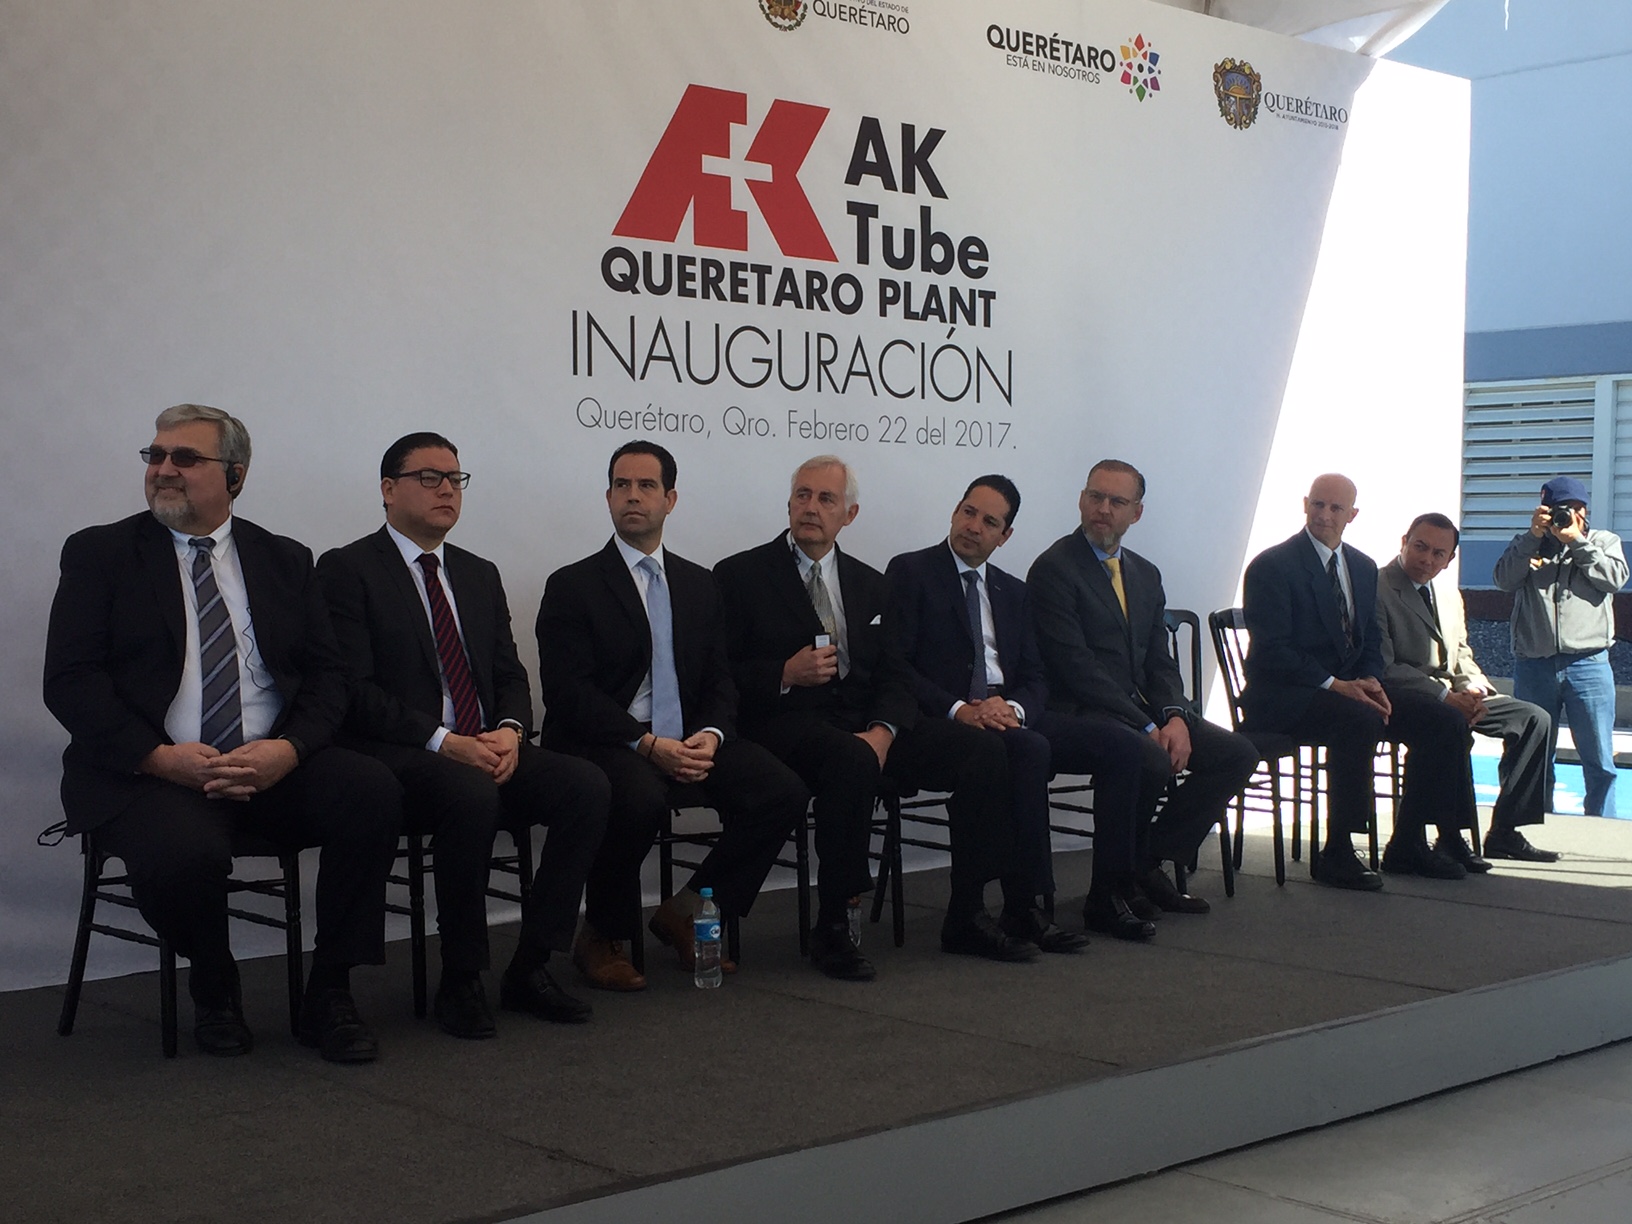  Empresa AK Tube inicia operaciones en Parque Industrial Querétaro